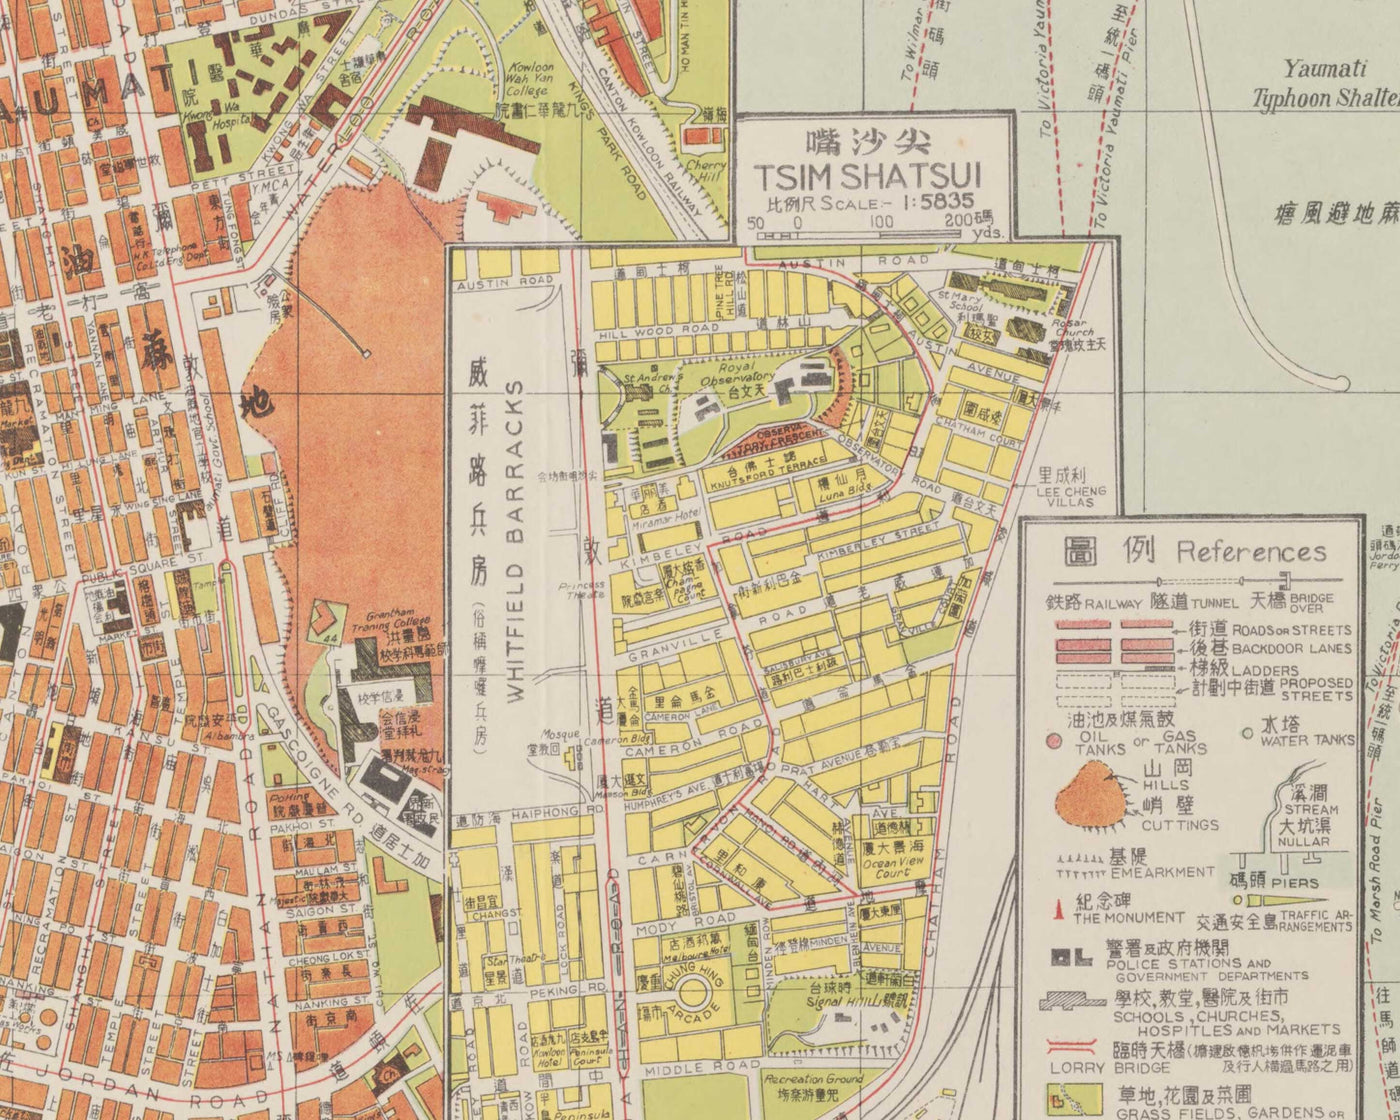 Ancienne carte de Hong Kong (Kowloon), 1957 par Chan King Hon - Yau Ma Tei, Mong Kok, Kowloon City, King's Park, Yau Yat Chuen